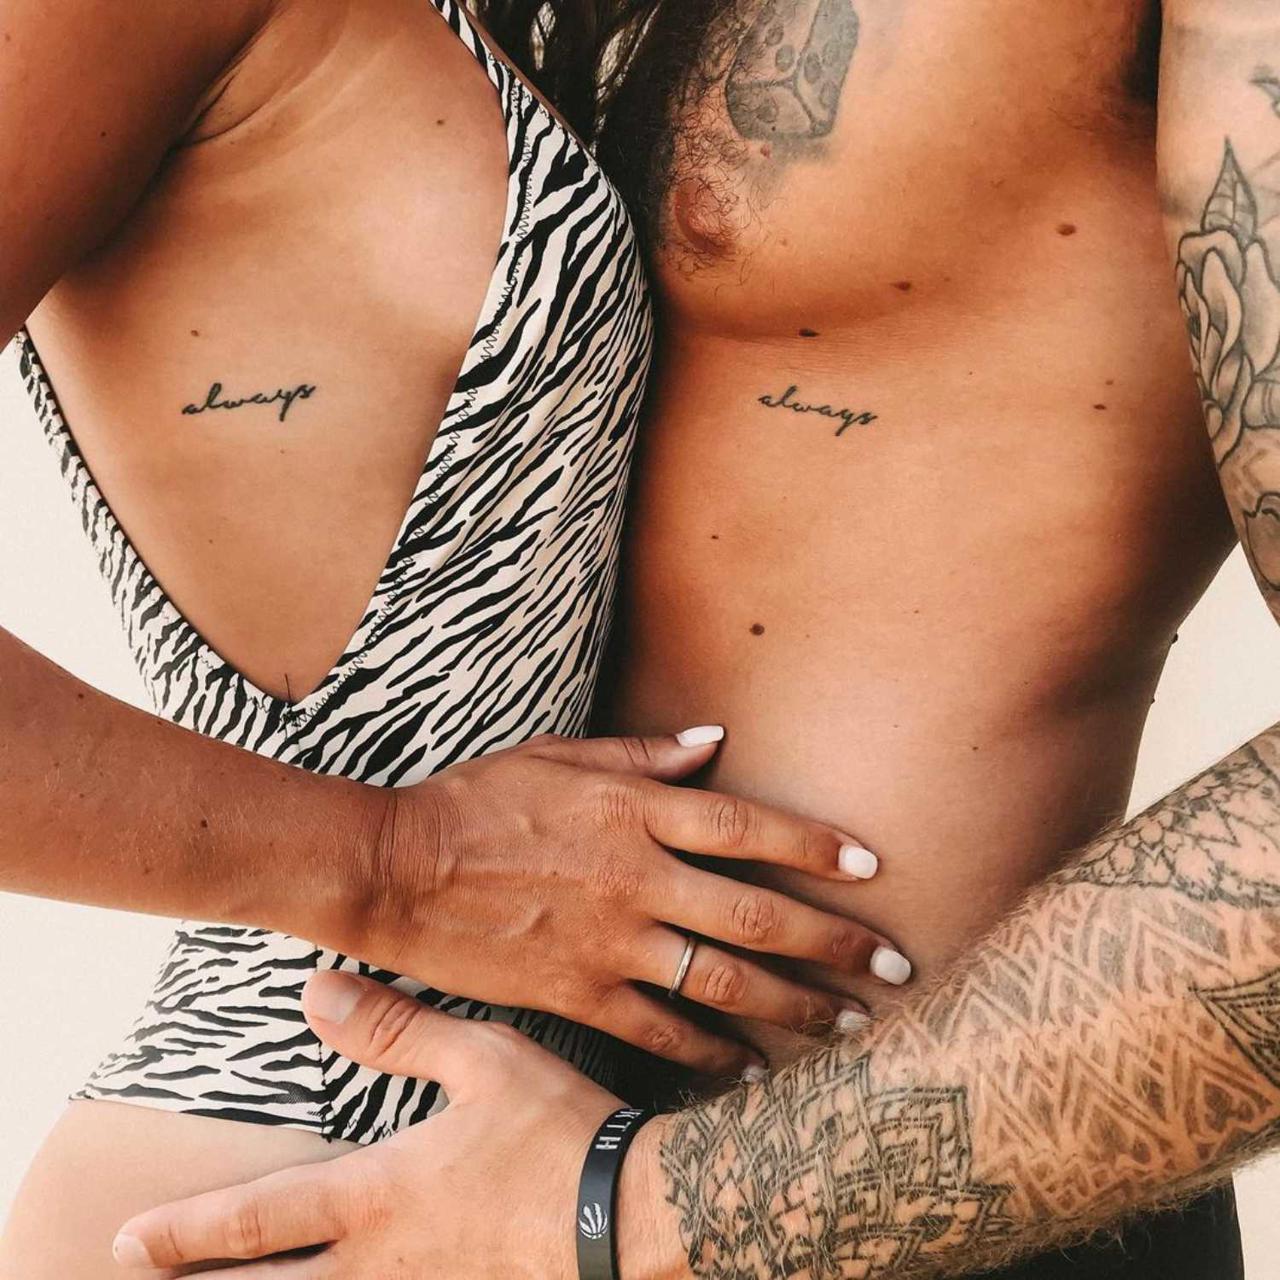 Tatuajes intimos de parejas